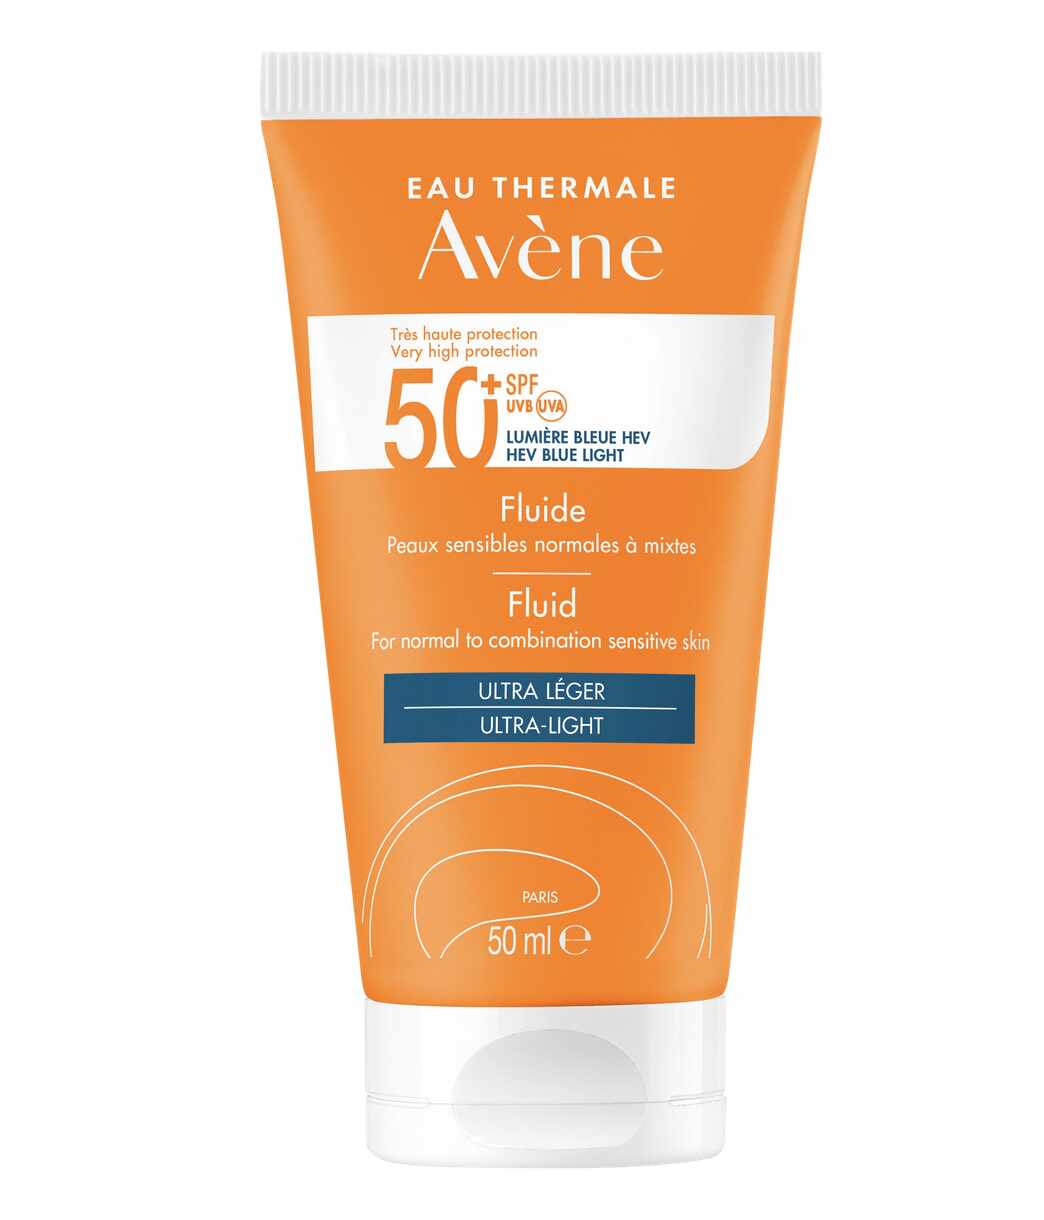 Avene SPF 50+ TRIASORB- Fluid cu protectie solara pentru piele normala si mixta, 50 ml